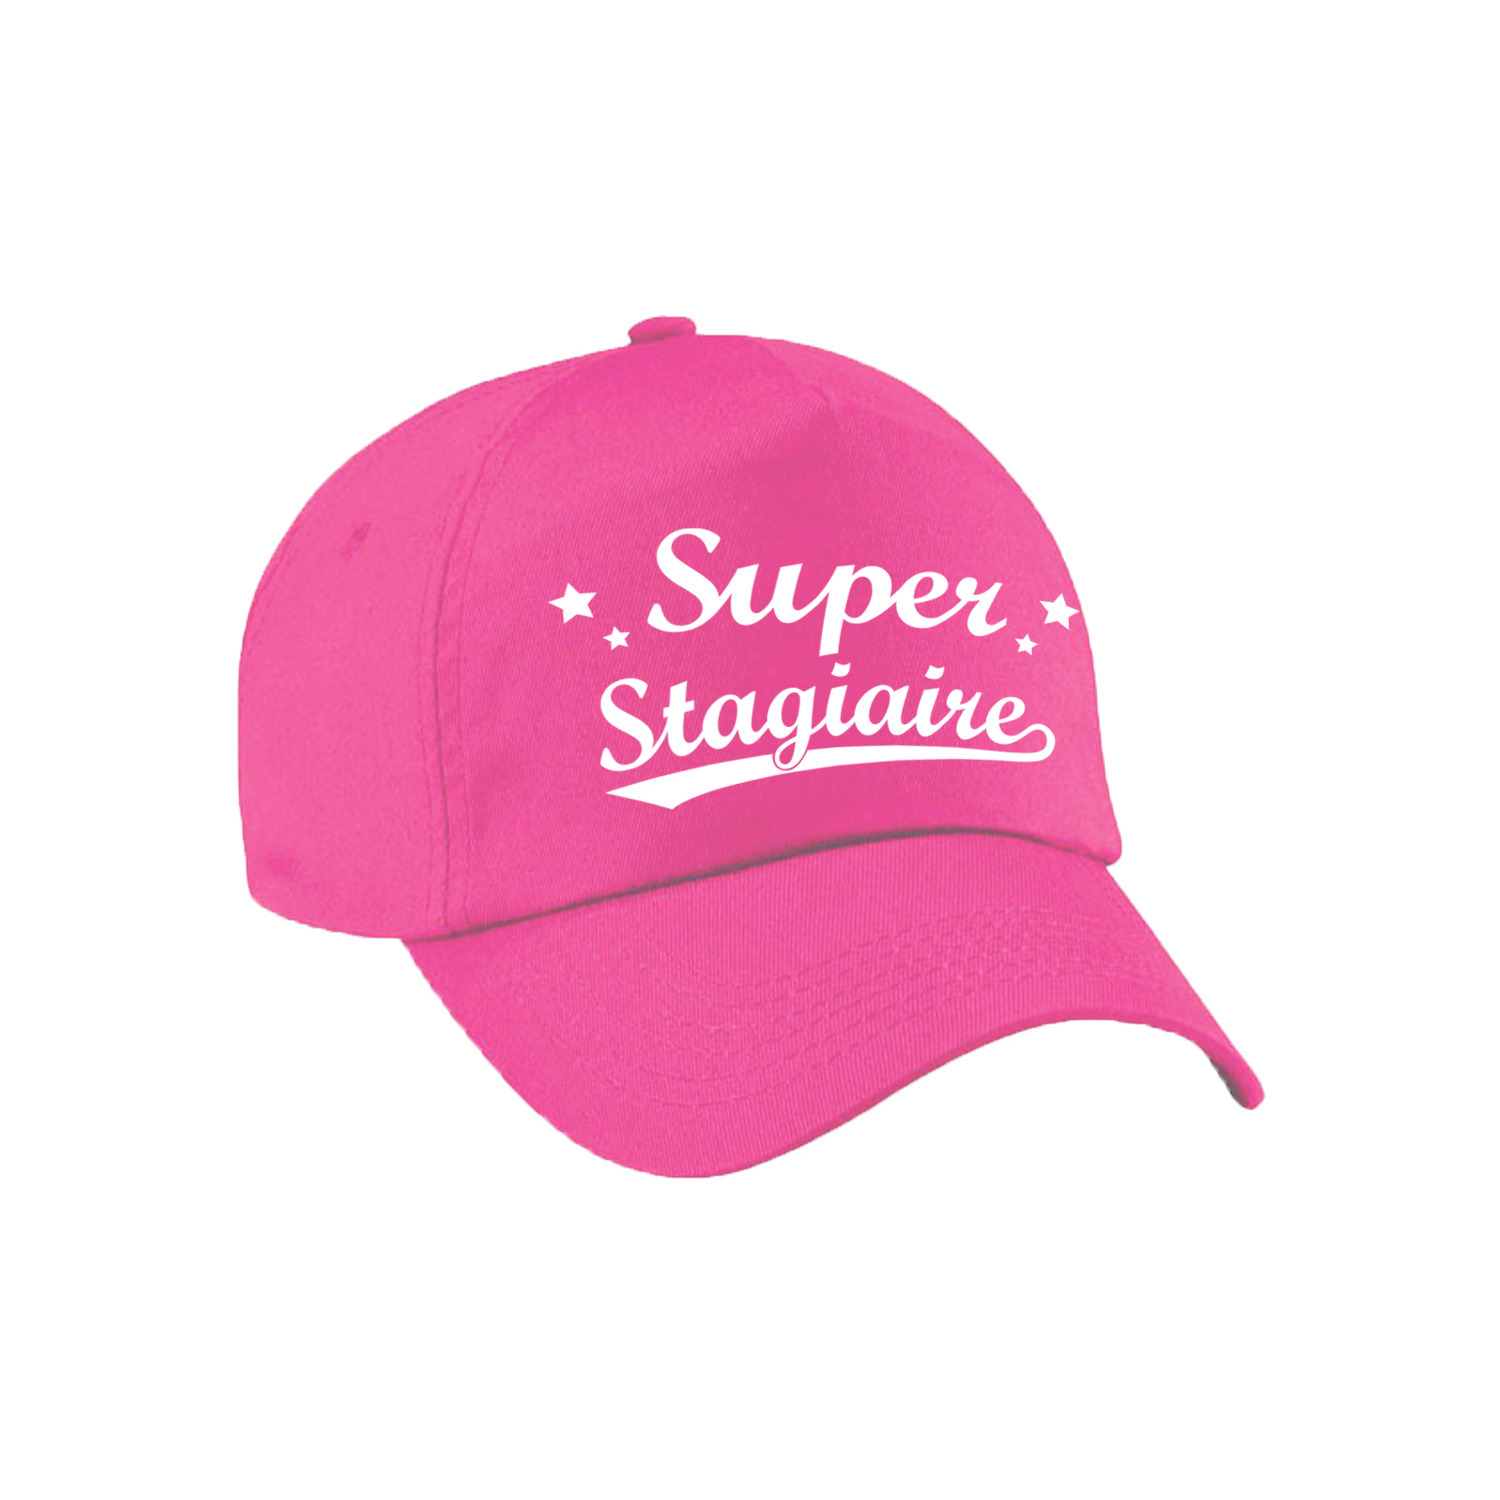 Super stagiaire cadeau pet /cap roze voor dames